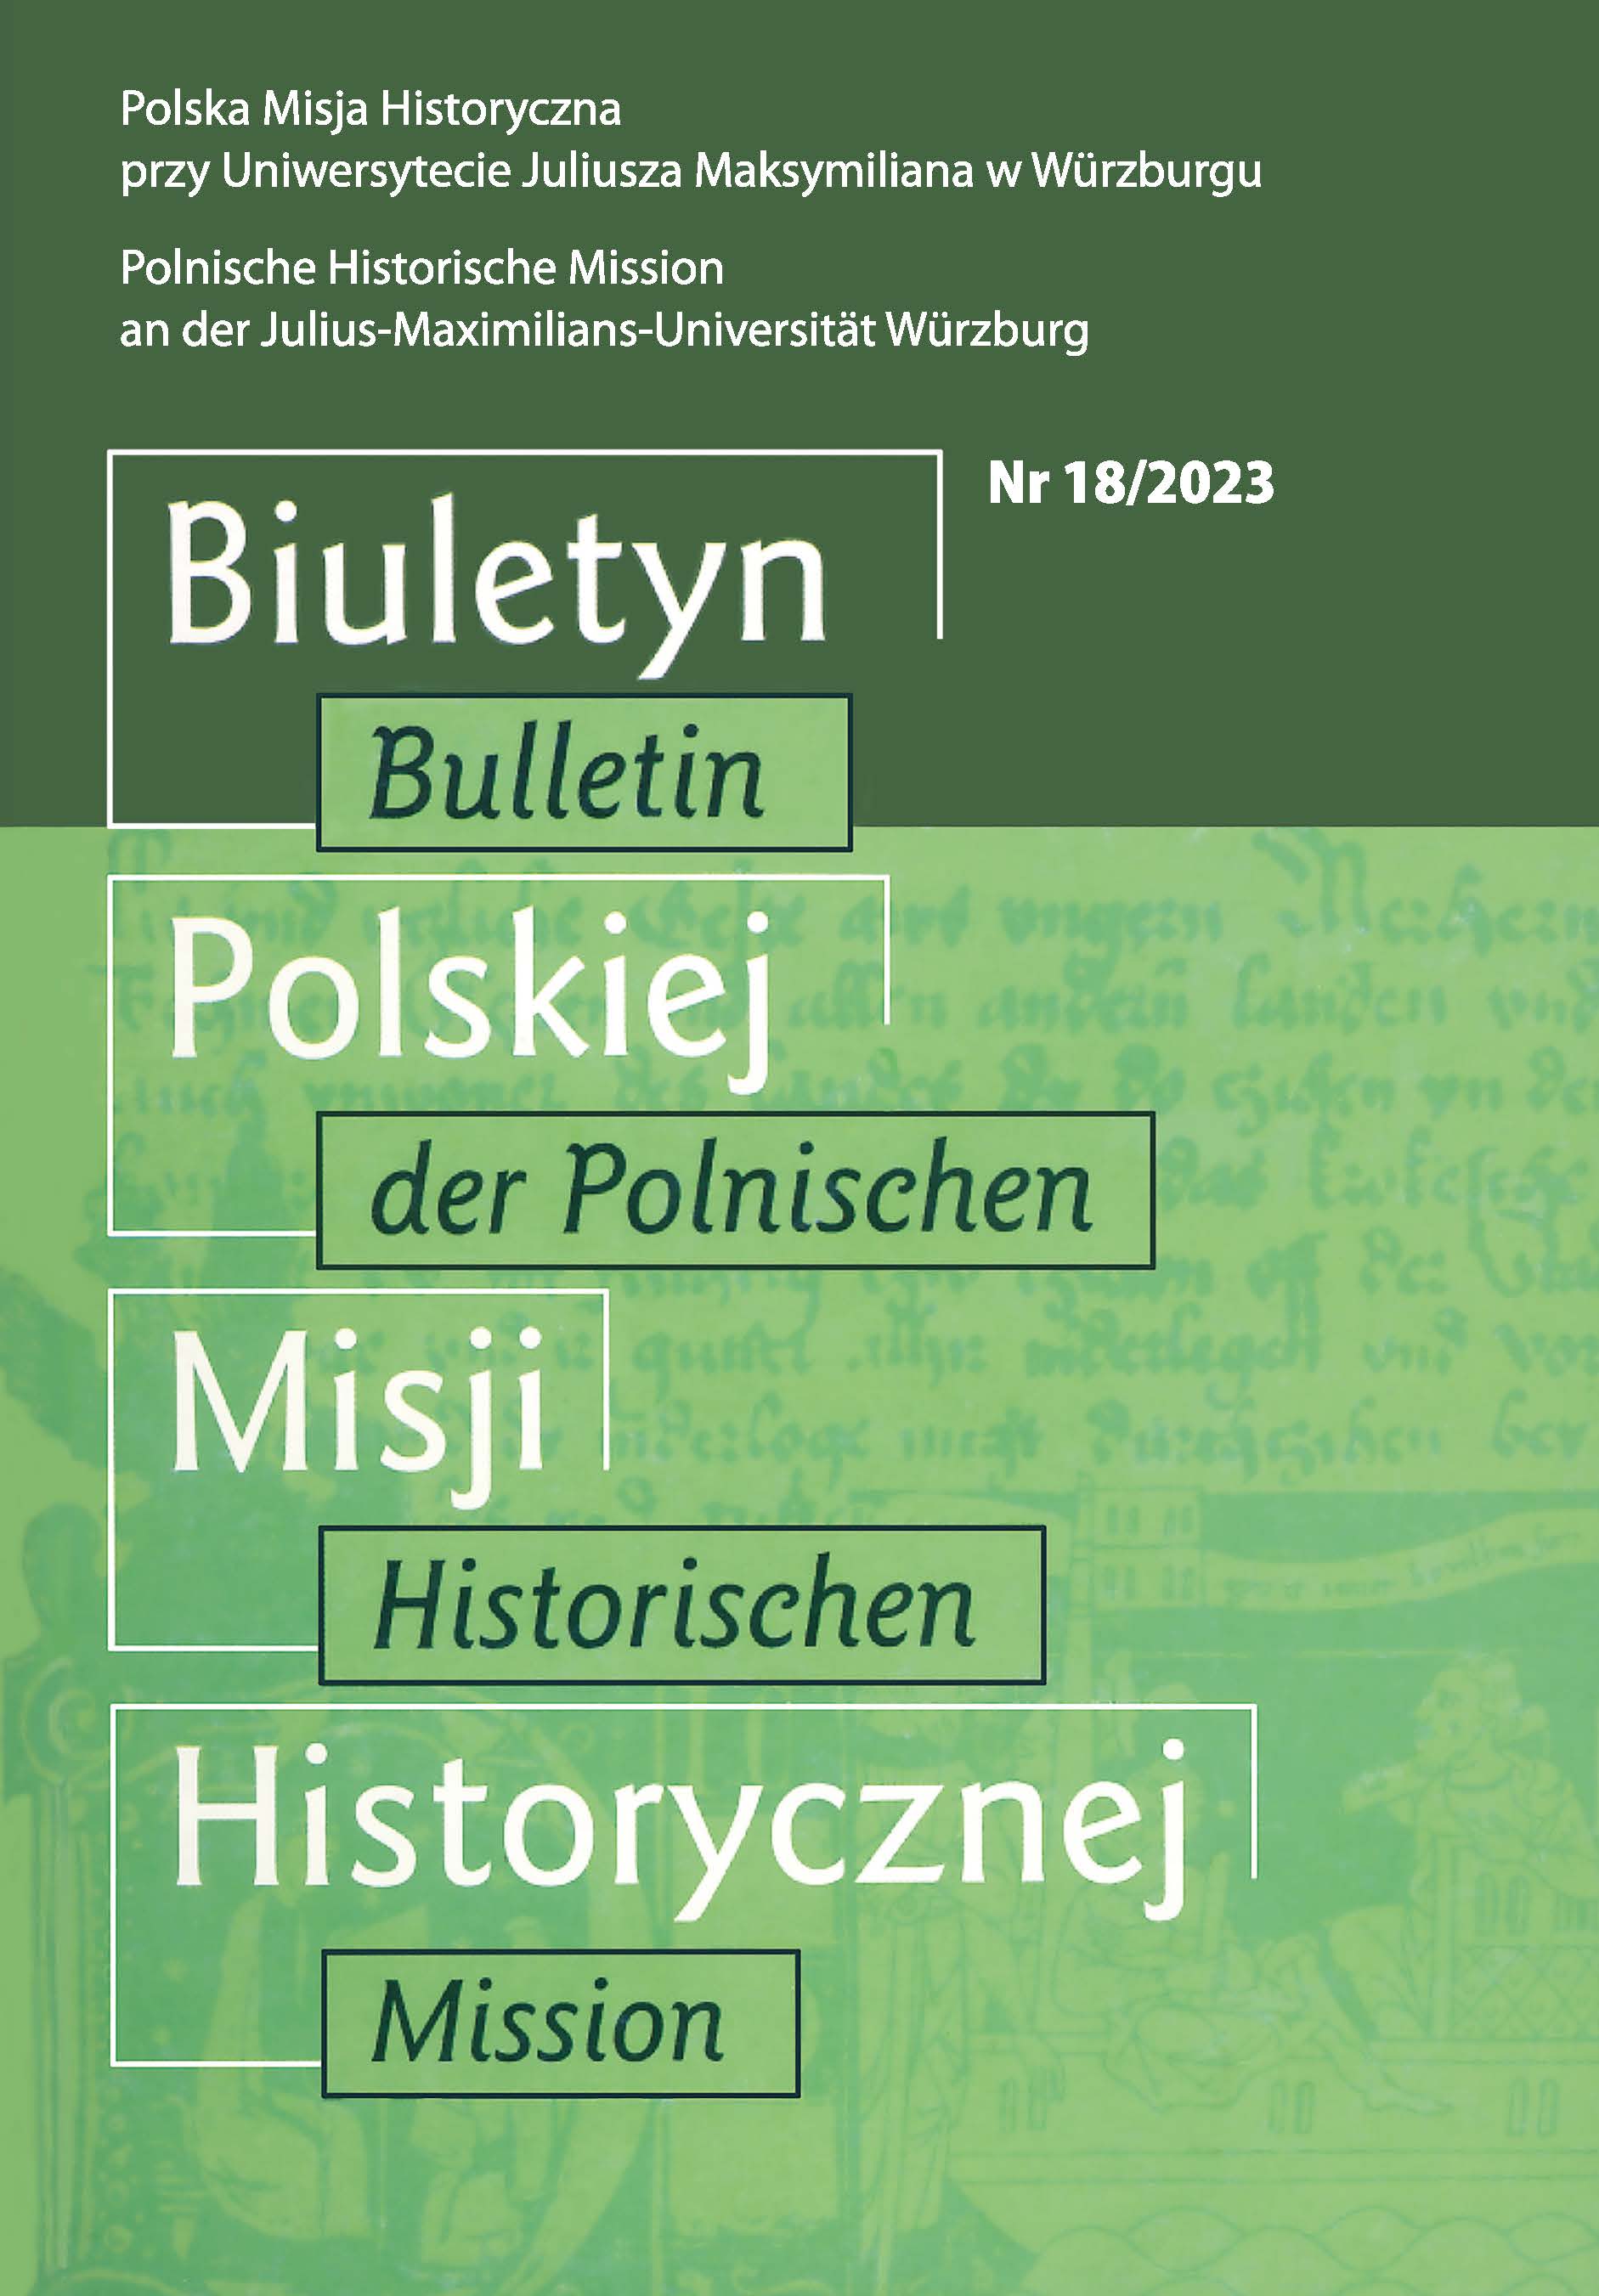 					Ansehen Nr. 18 (2023): Bulletin der Polnischen Historischen Mission
				